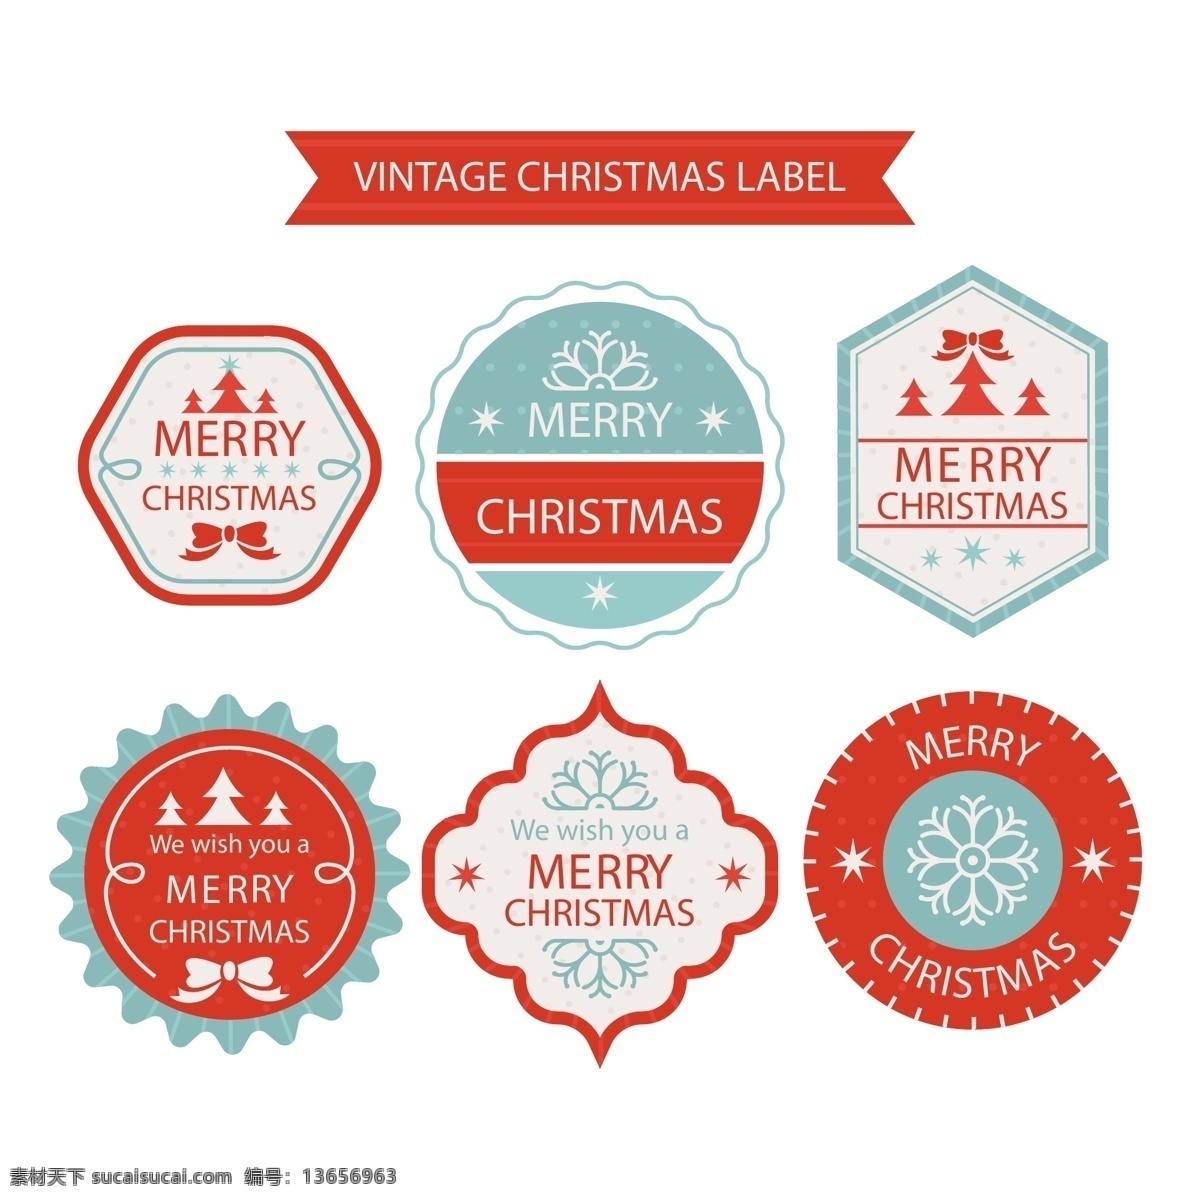 圣诞节 英文 标签 雪花 蝴蝶结 矢量素材 圣诞树 ai素材